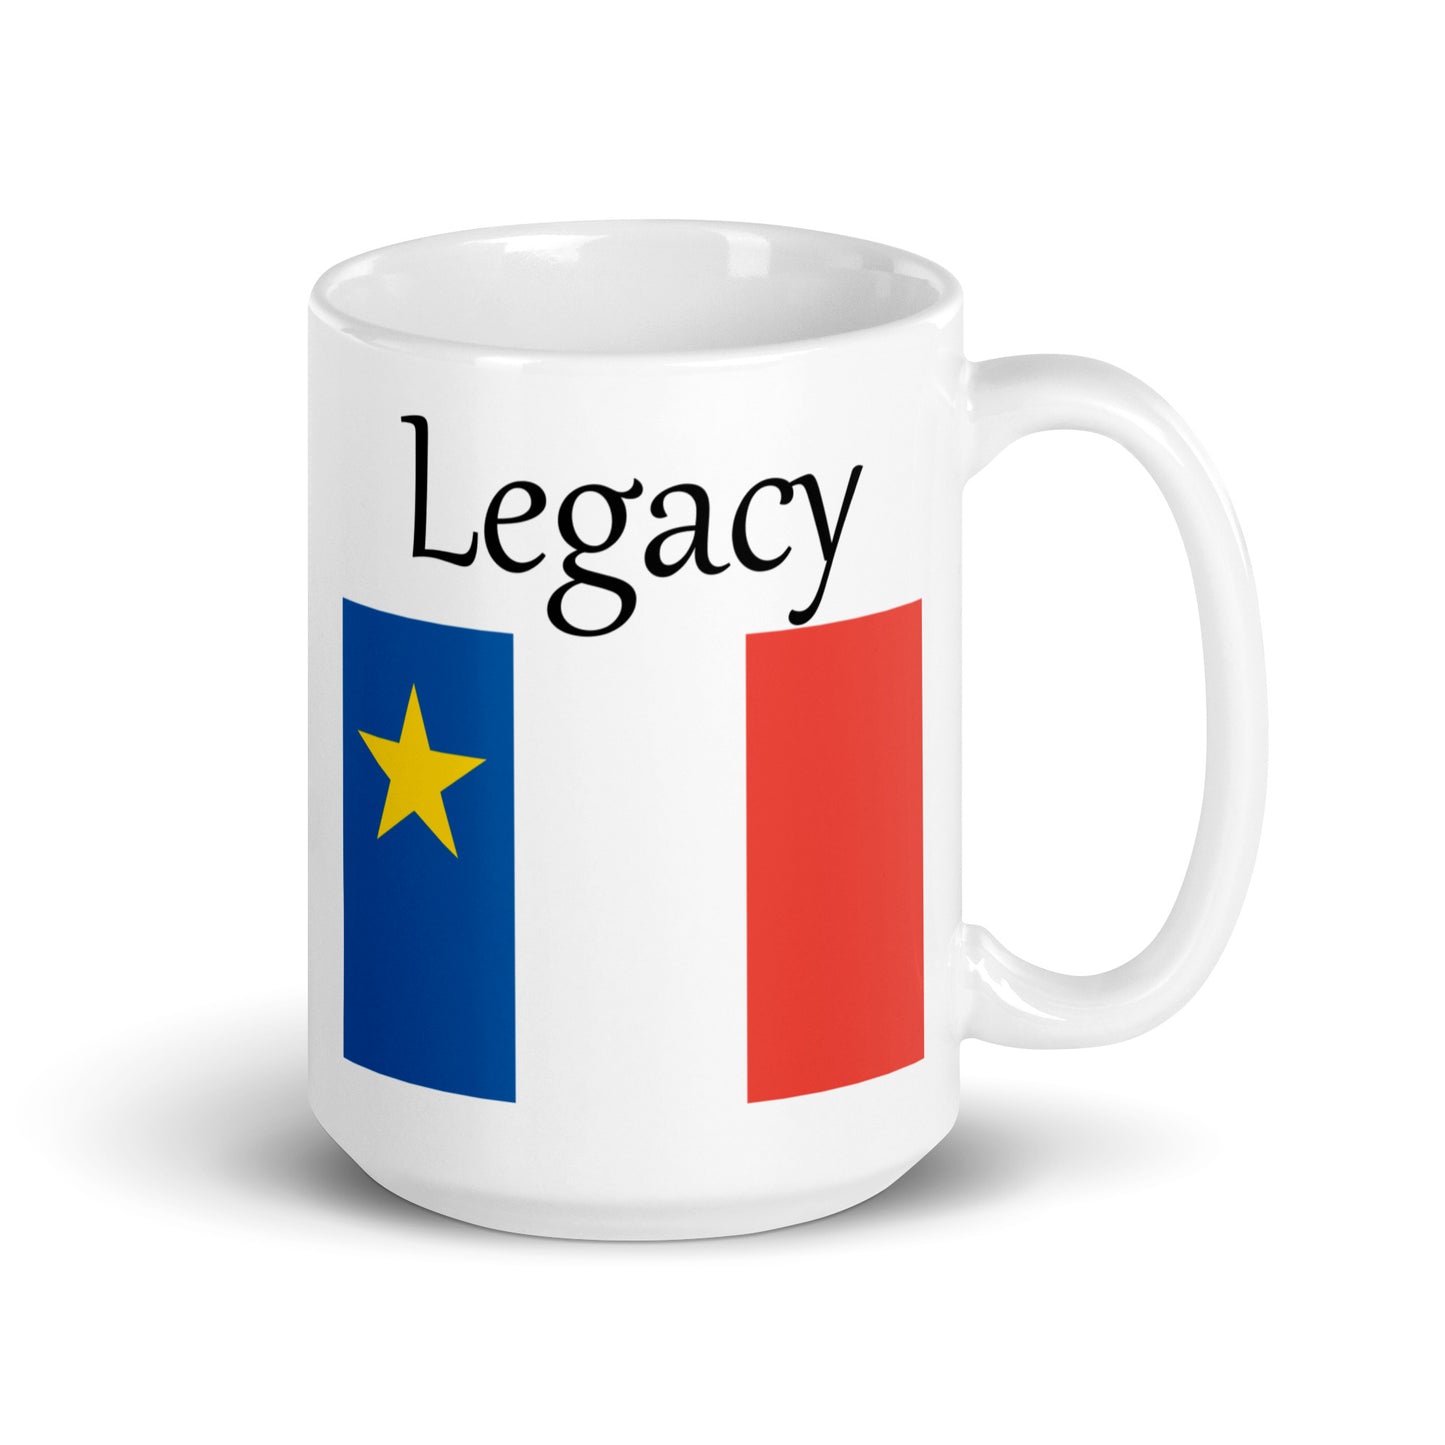 Large 15oz Mug with Acadian Flag and Last Name